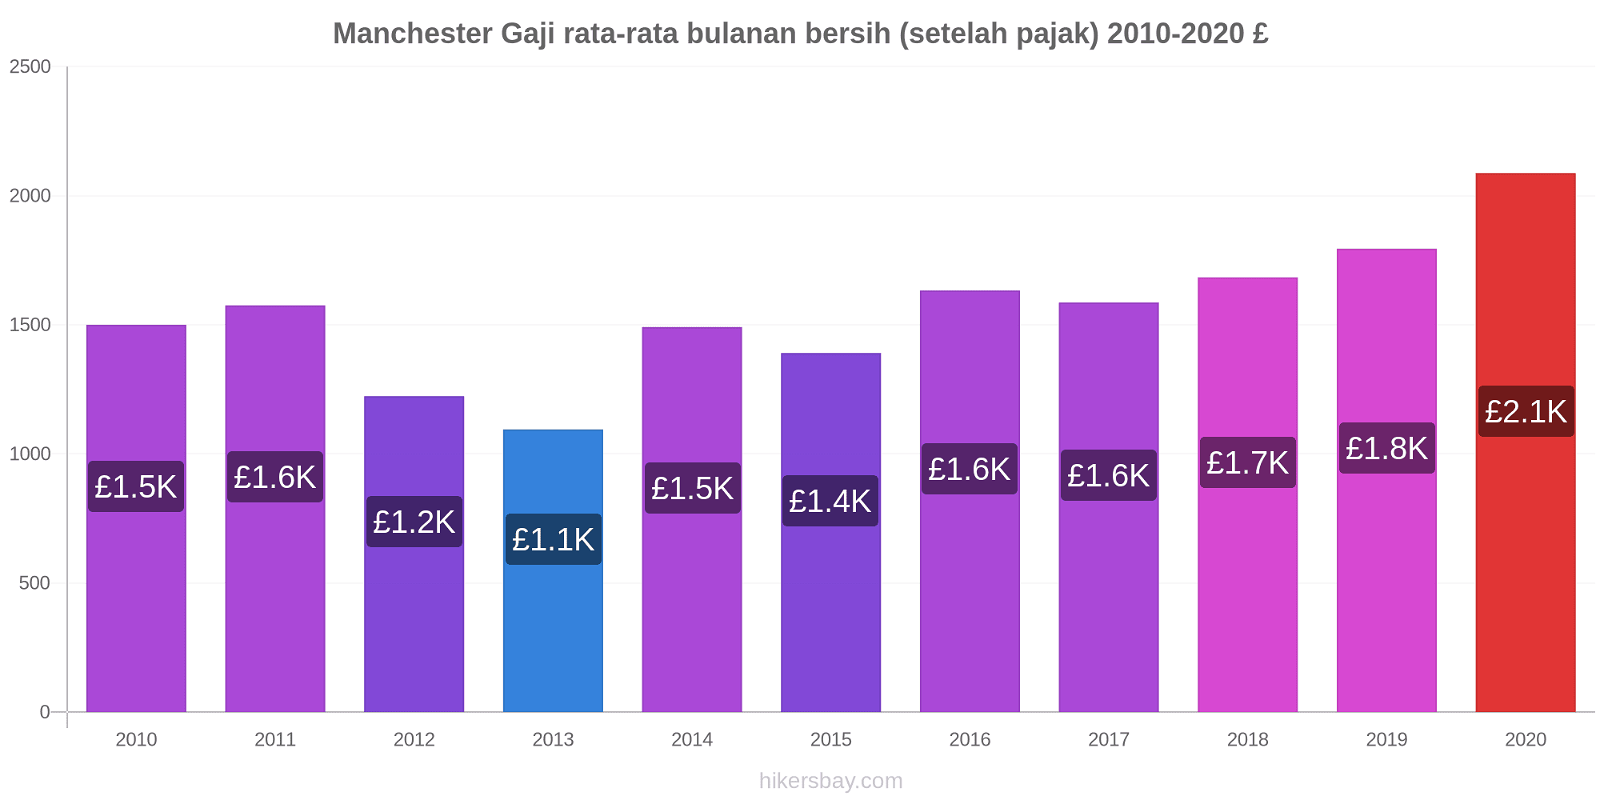 Manchester perubahan harga Gaji rata-rata bulanan bersih (setelah pajak) hikersbay.com